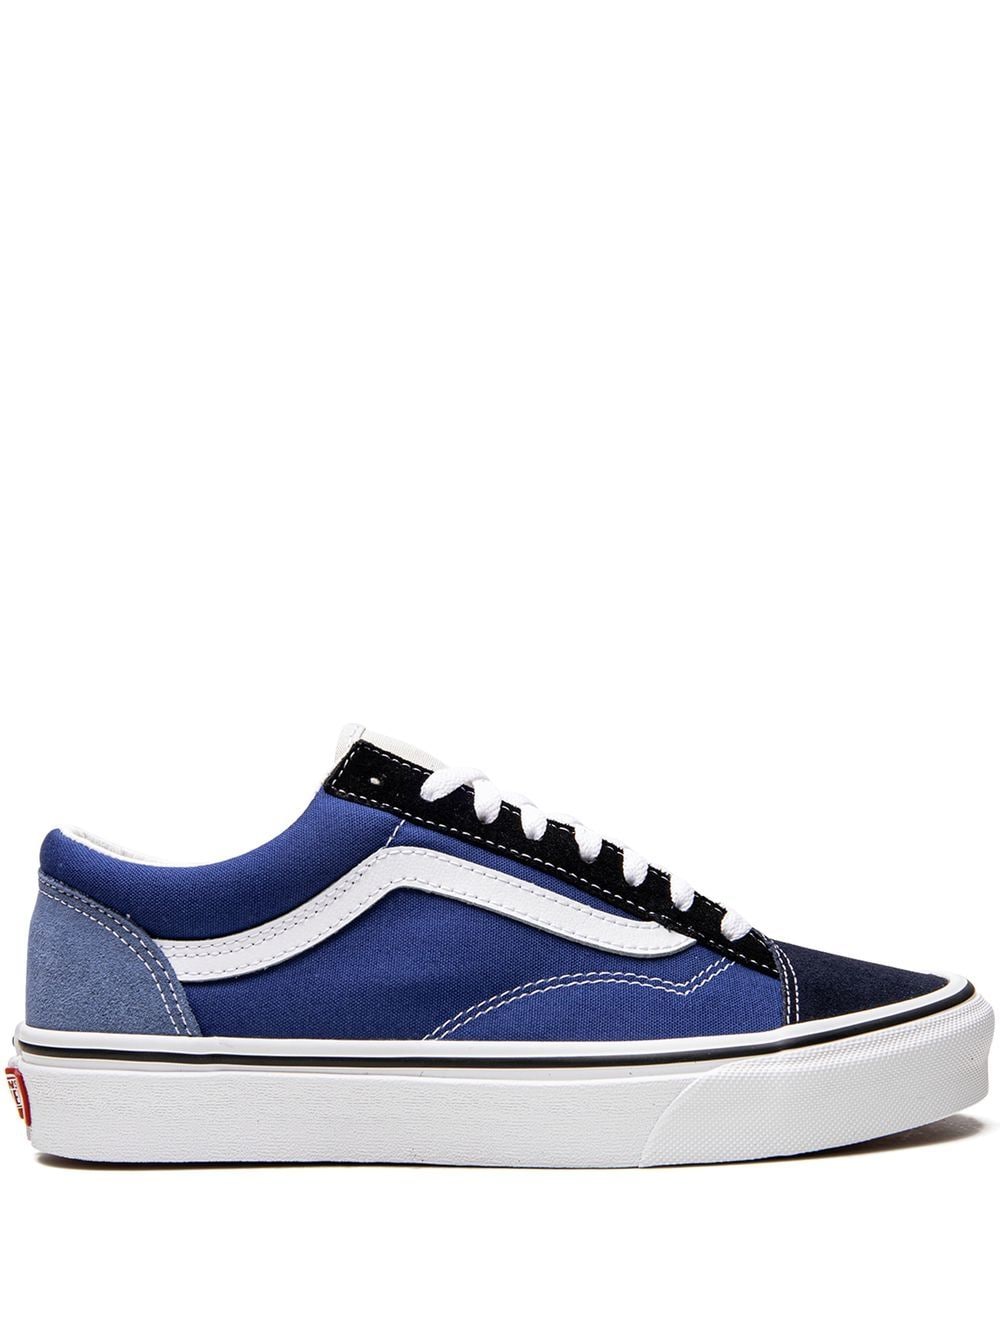 Vans Color Block Style 36 "Navy/Multi" sneakers - Blue von Vans